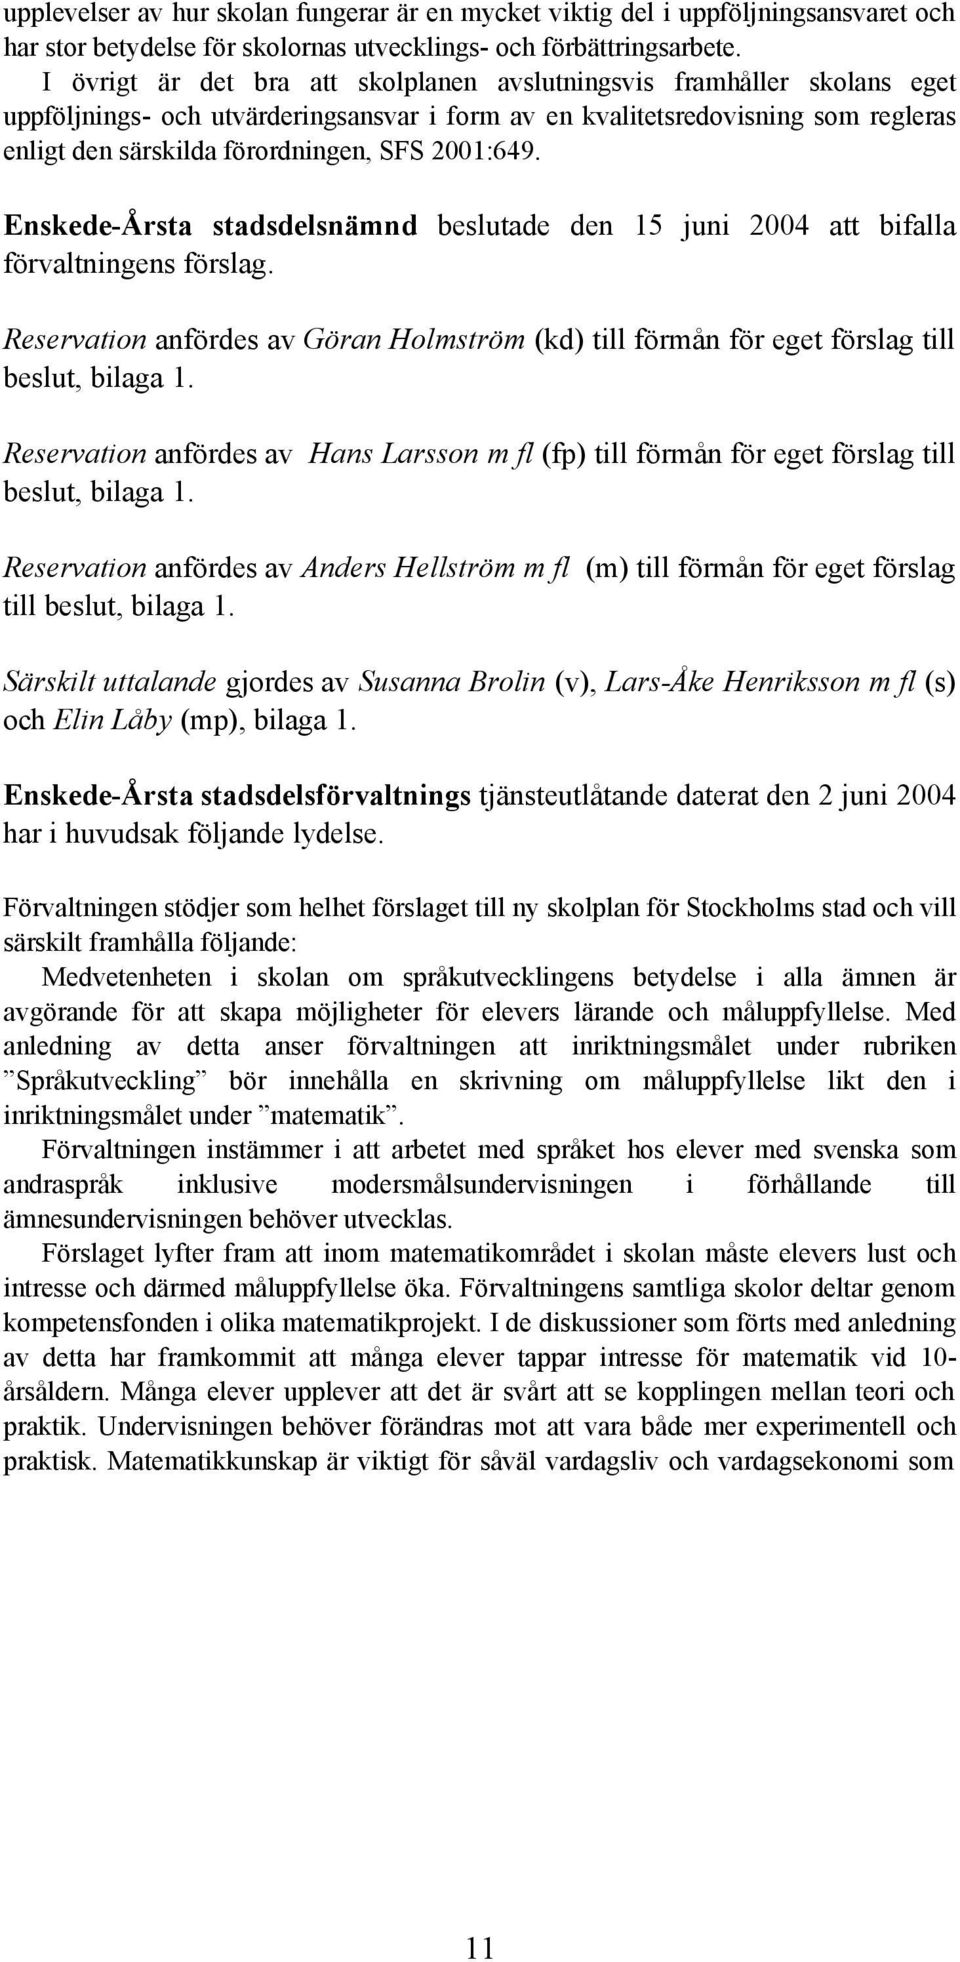 2001:649. Enskede-Årsta stadsdelsnämnd beslutade den 15 juni 2004 att bifalla förvaltningens förslag. Reservation anfördes av Göran Holmström (kd) till förmån för eget förslag till beslut, bilaga 1.